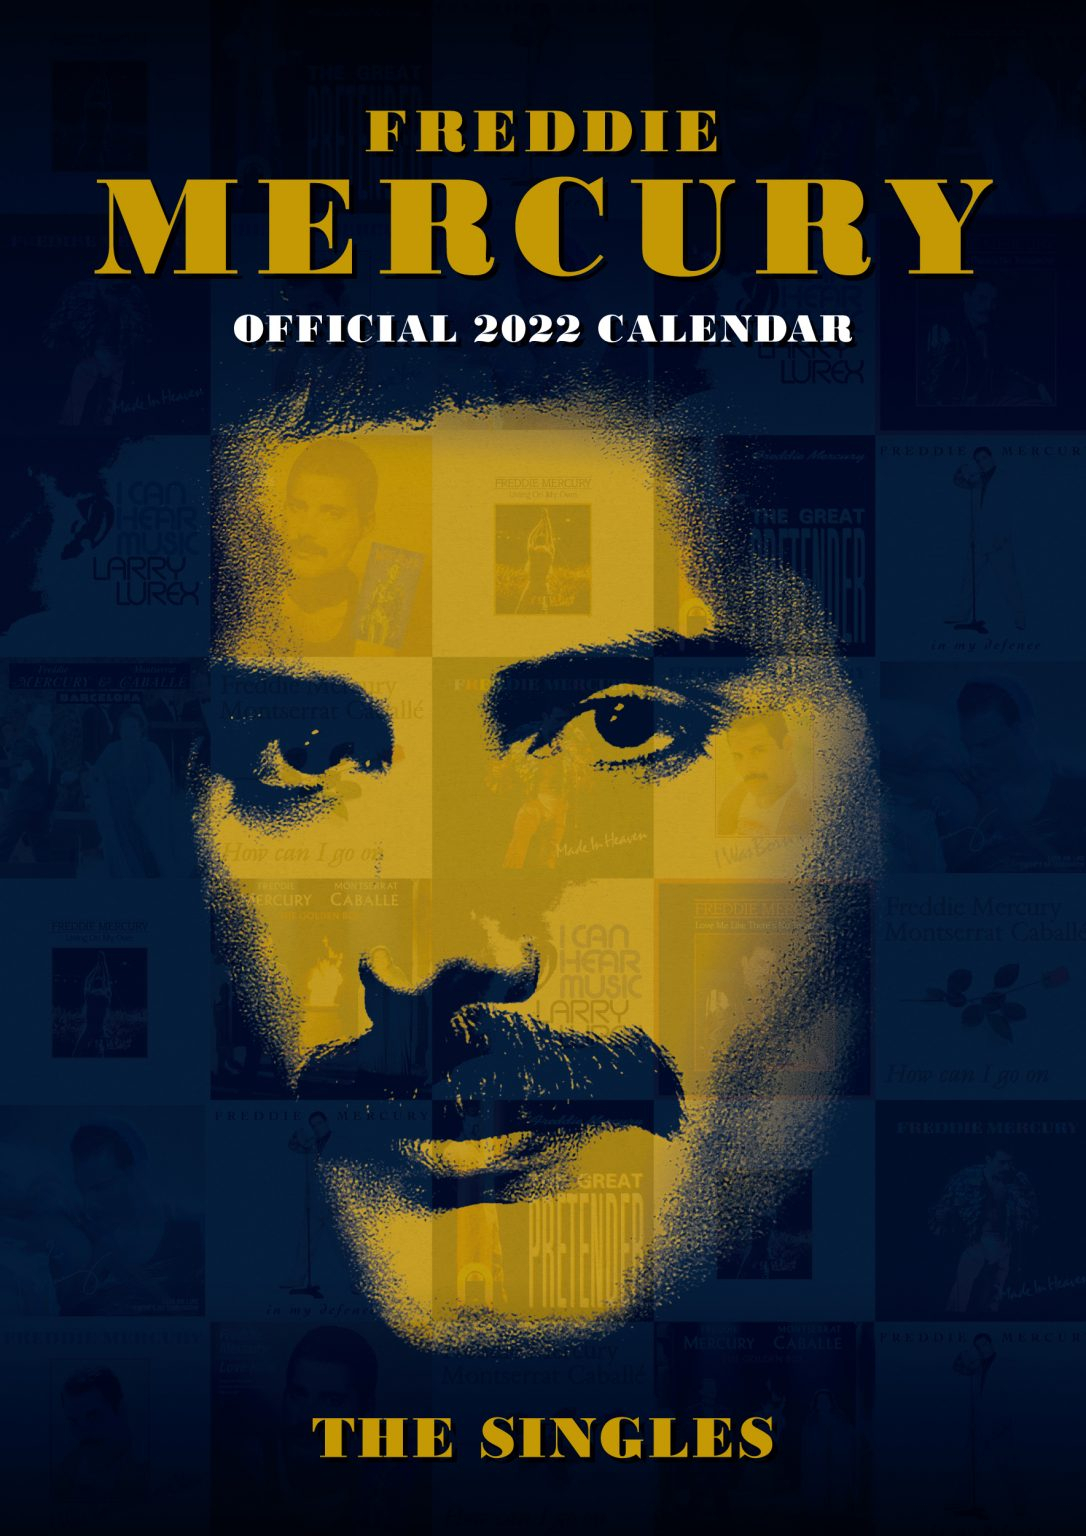 Freddie Mercury A3 Wall Calendar 2022 - Grange Communications